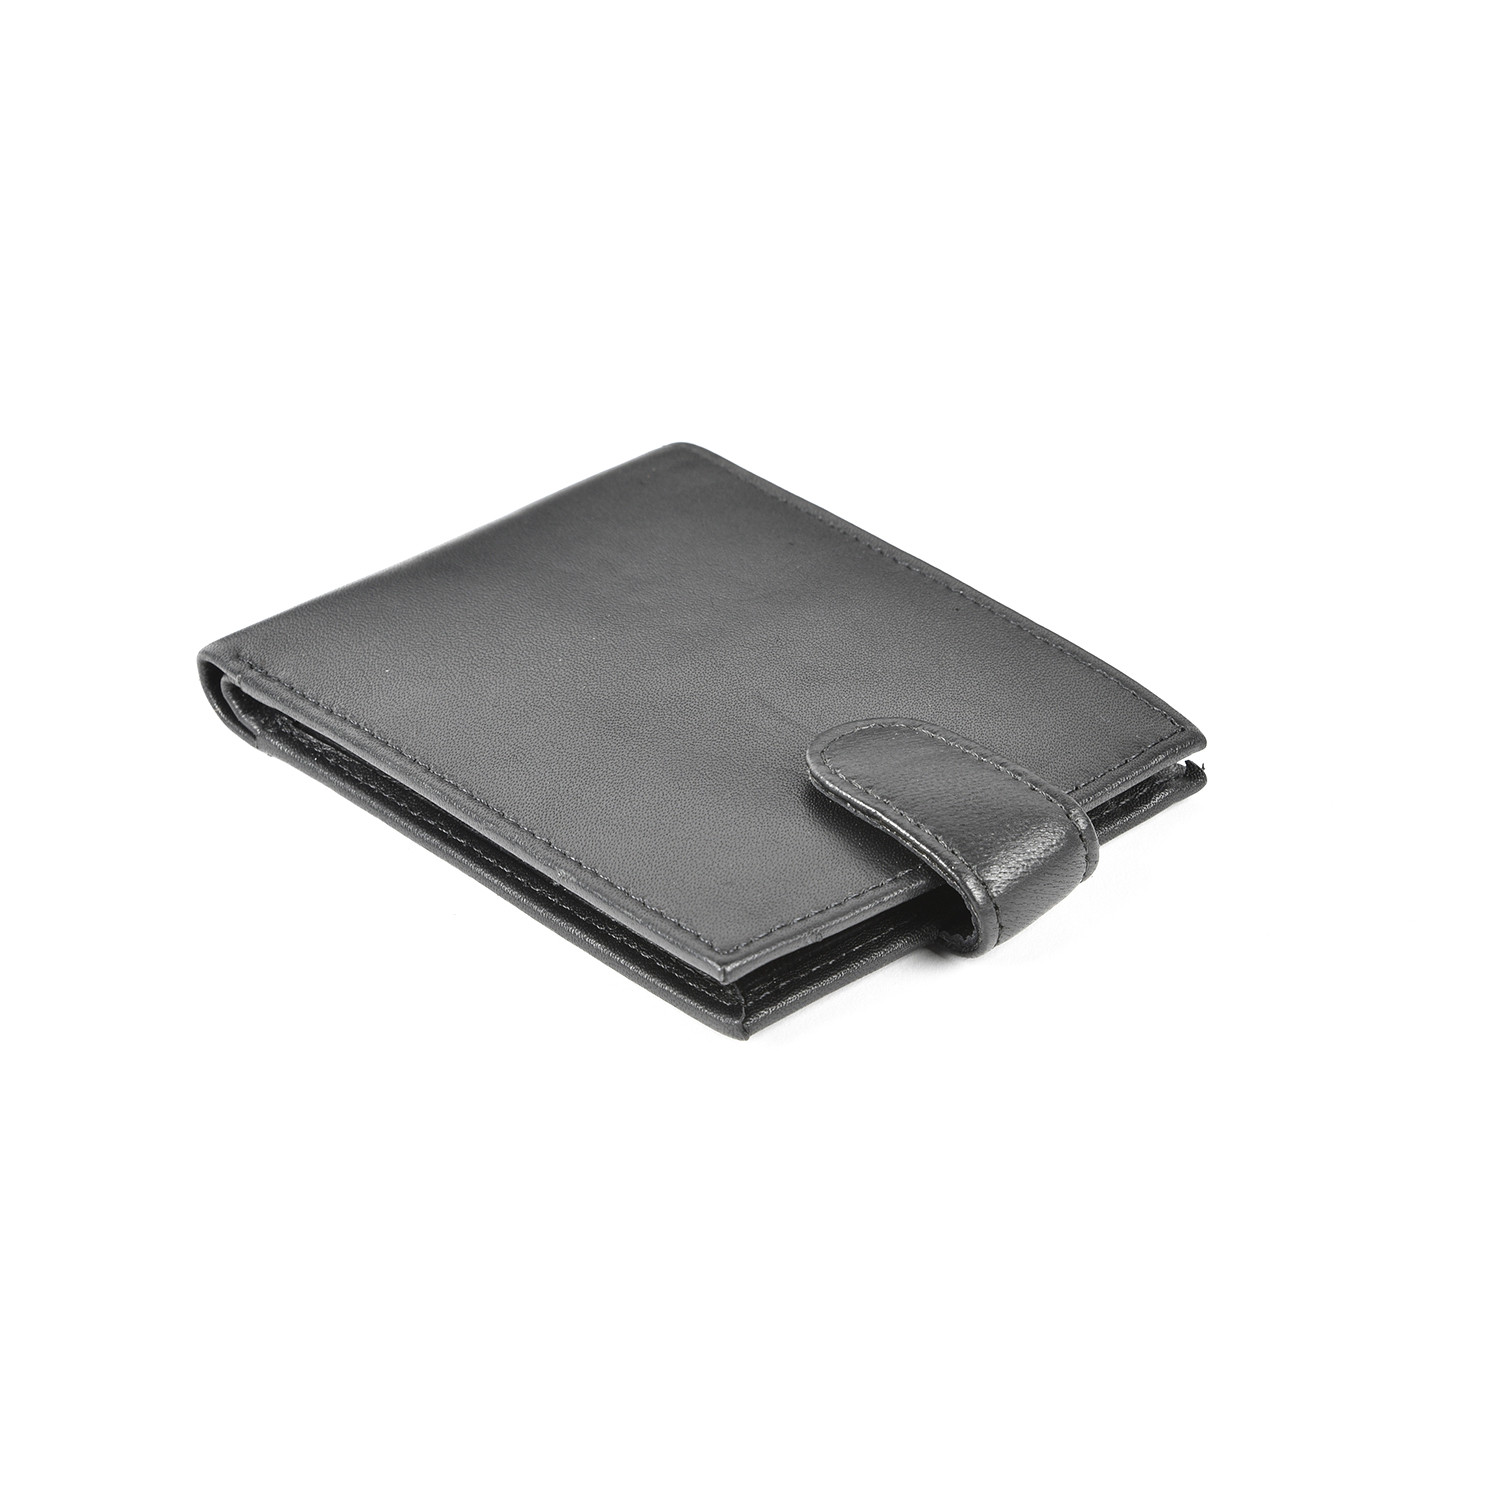 Leather Wallet - Black Image 1